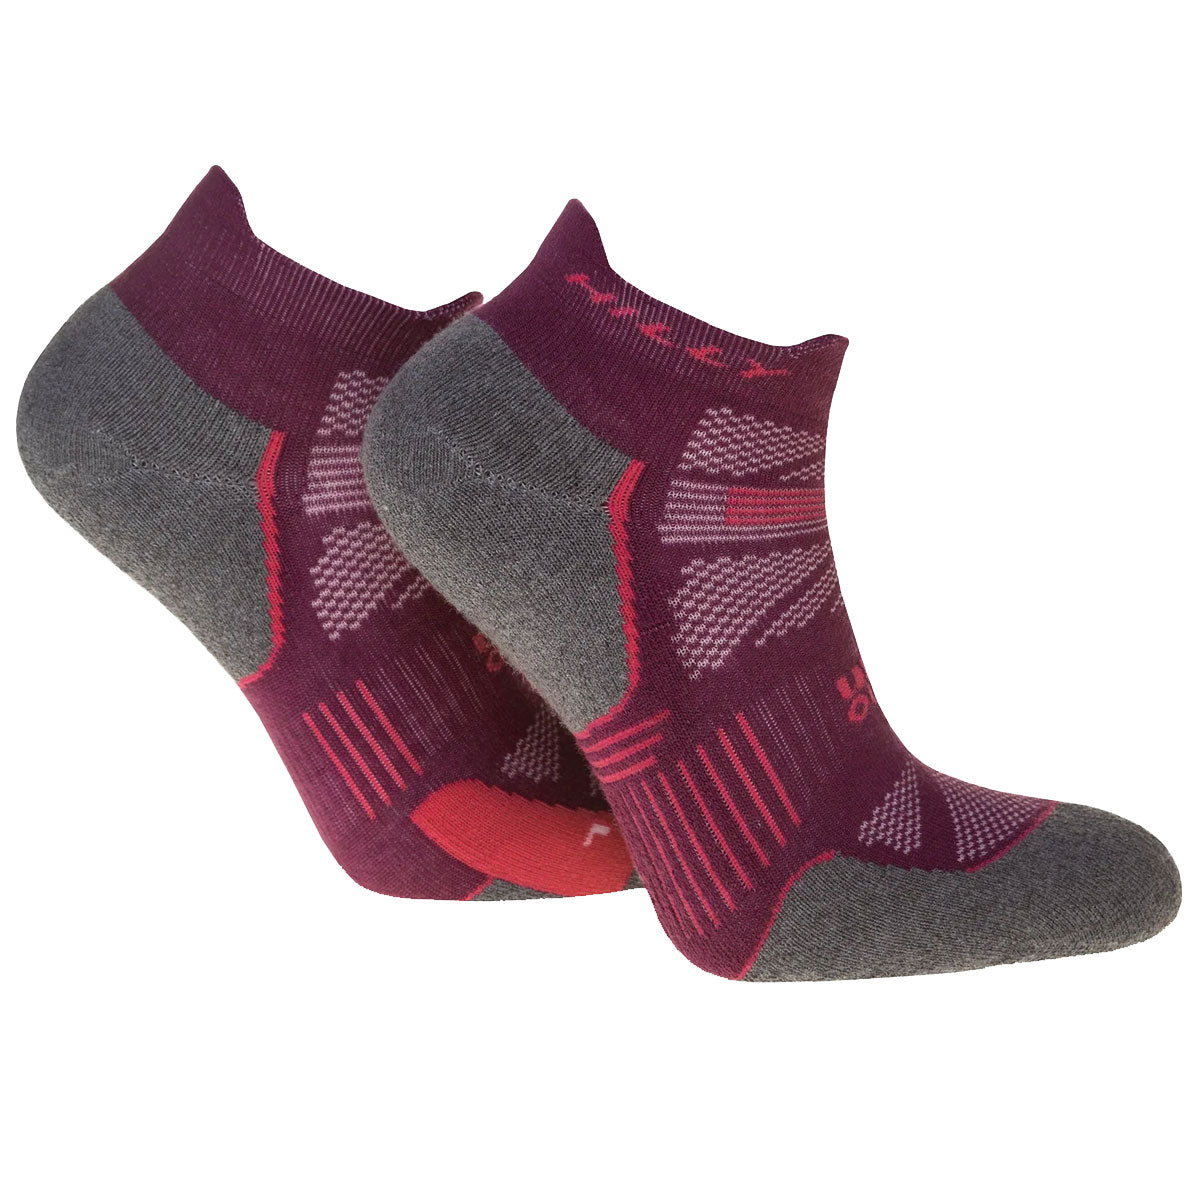 Hilly Supreme Anklet Med Socks - Womens - Elderberry/Grey Marl